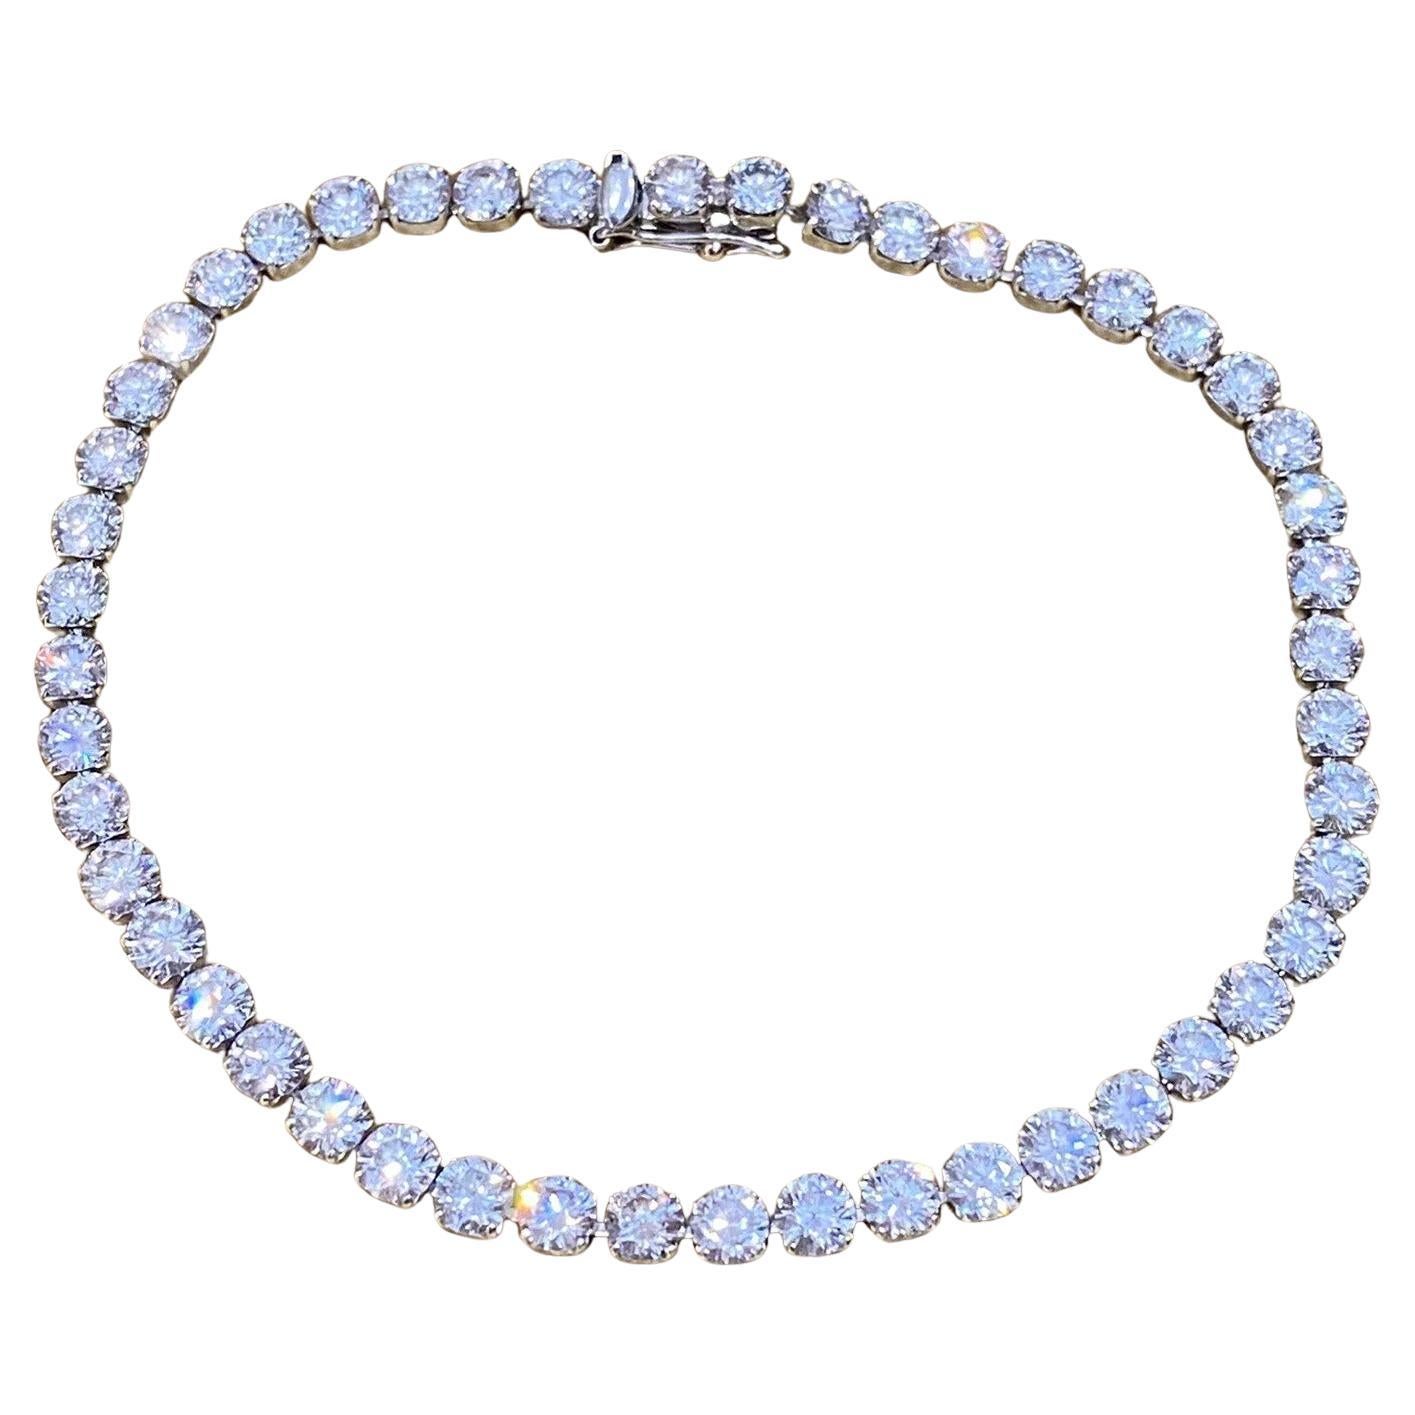 10.00 Carats Diamond Tennis Bracelet in Platinum 8.25 inches